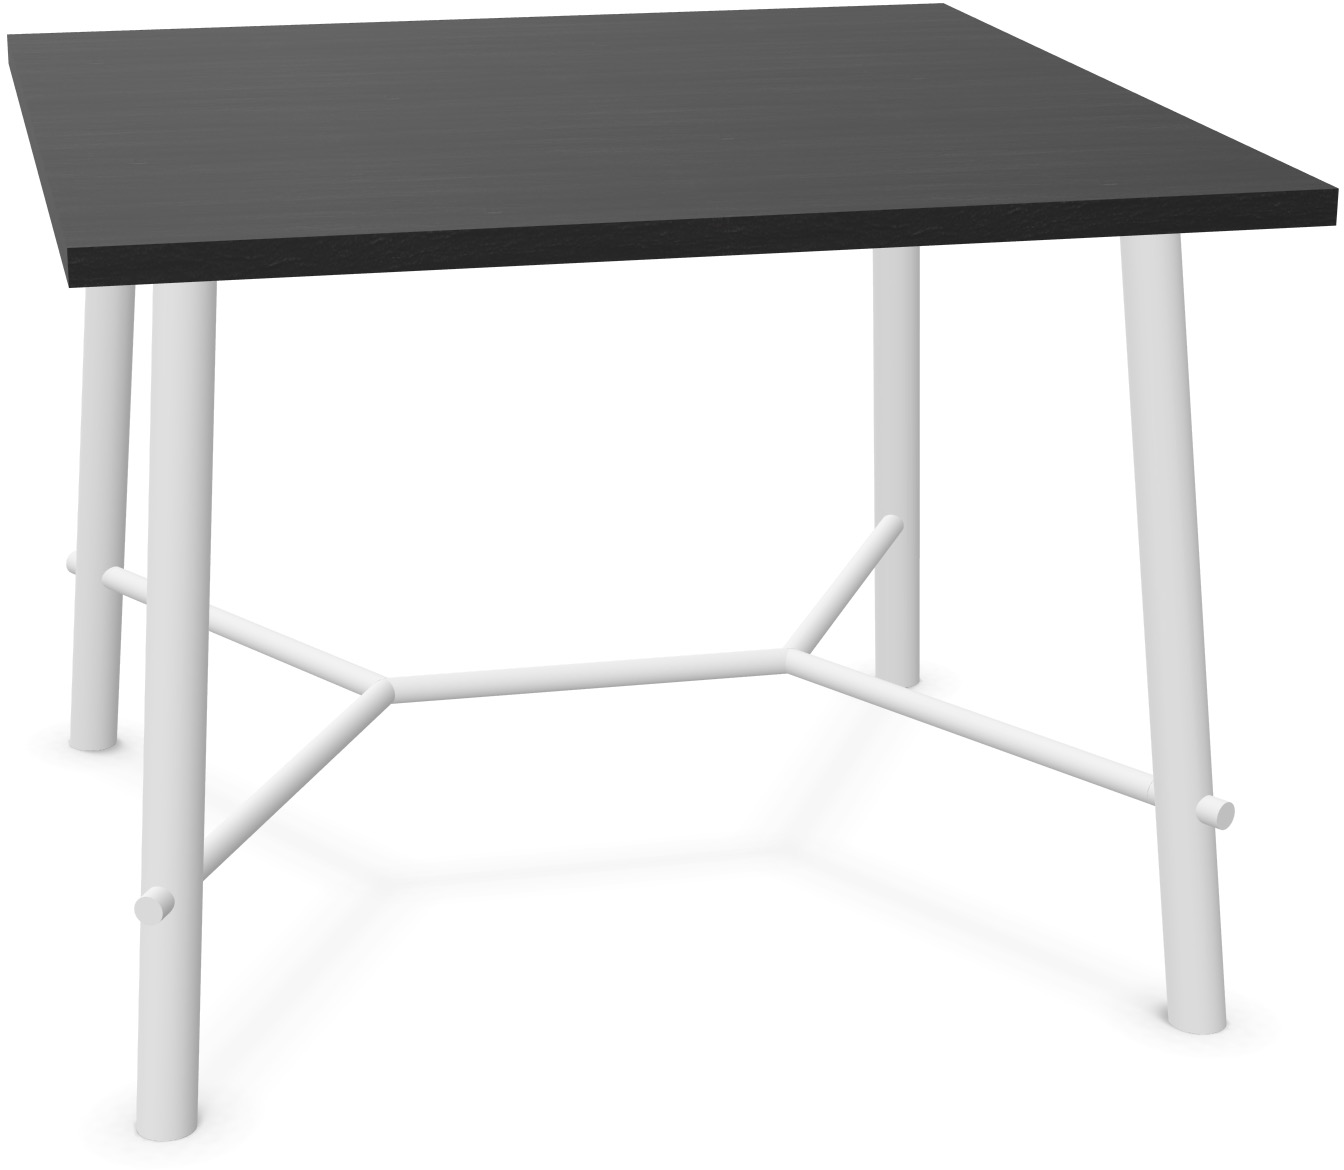 Record Living Tisch square in Eiche schwarz / Eiche weiss präsentiert im Onlineshop von KAQTU Design AG. Esstisch ist von Infiniti Design